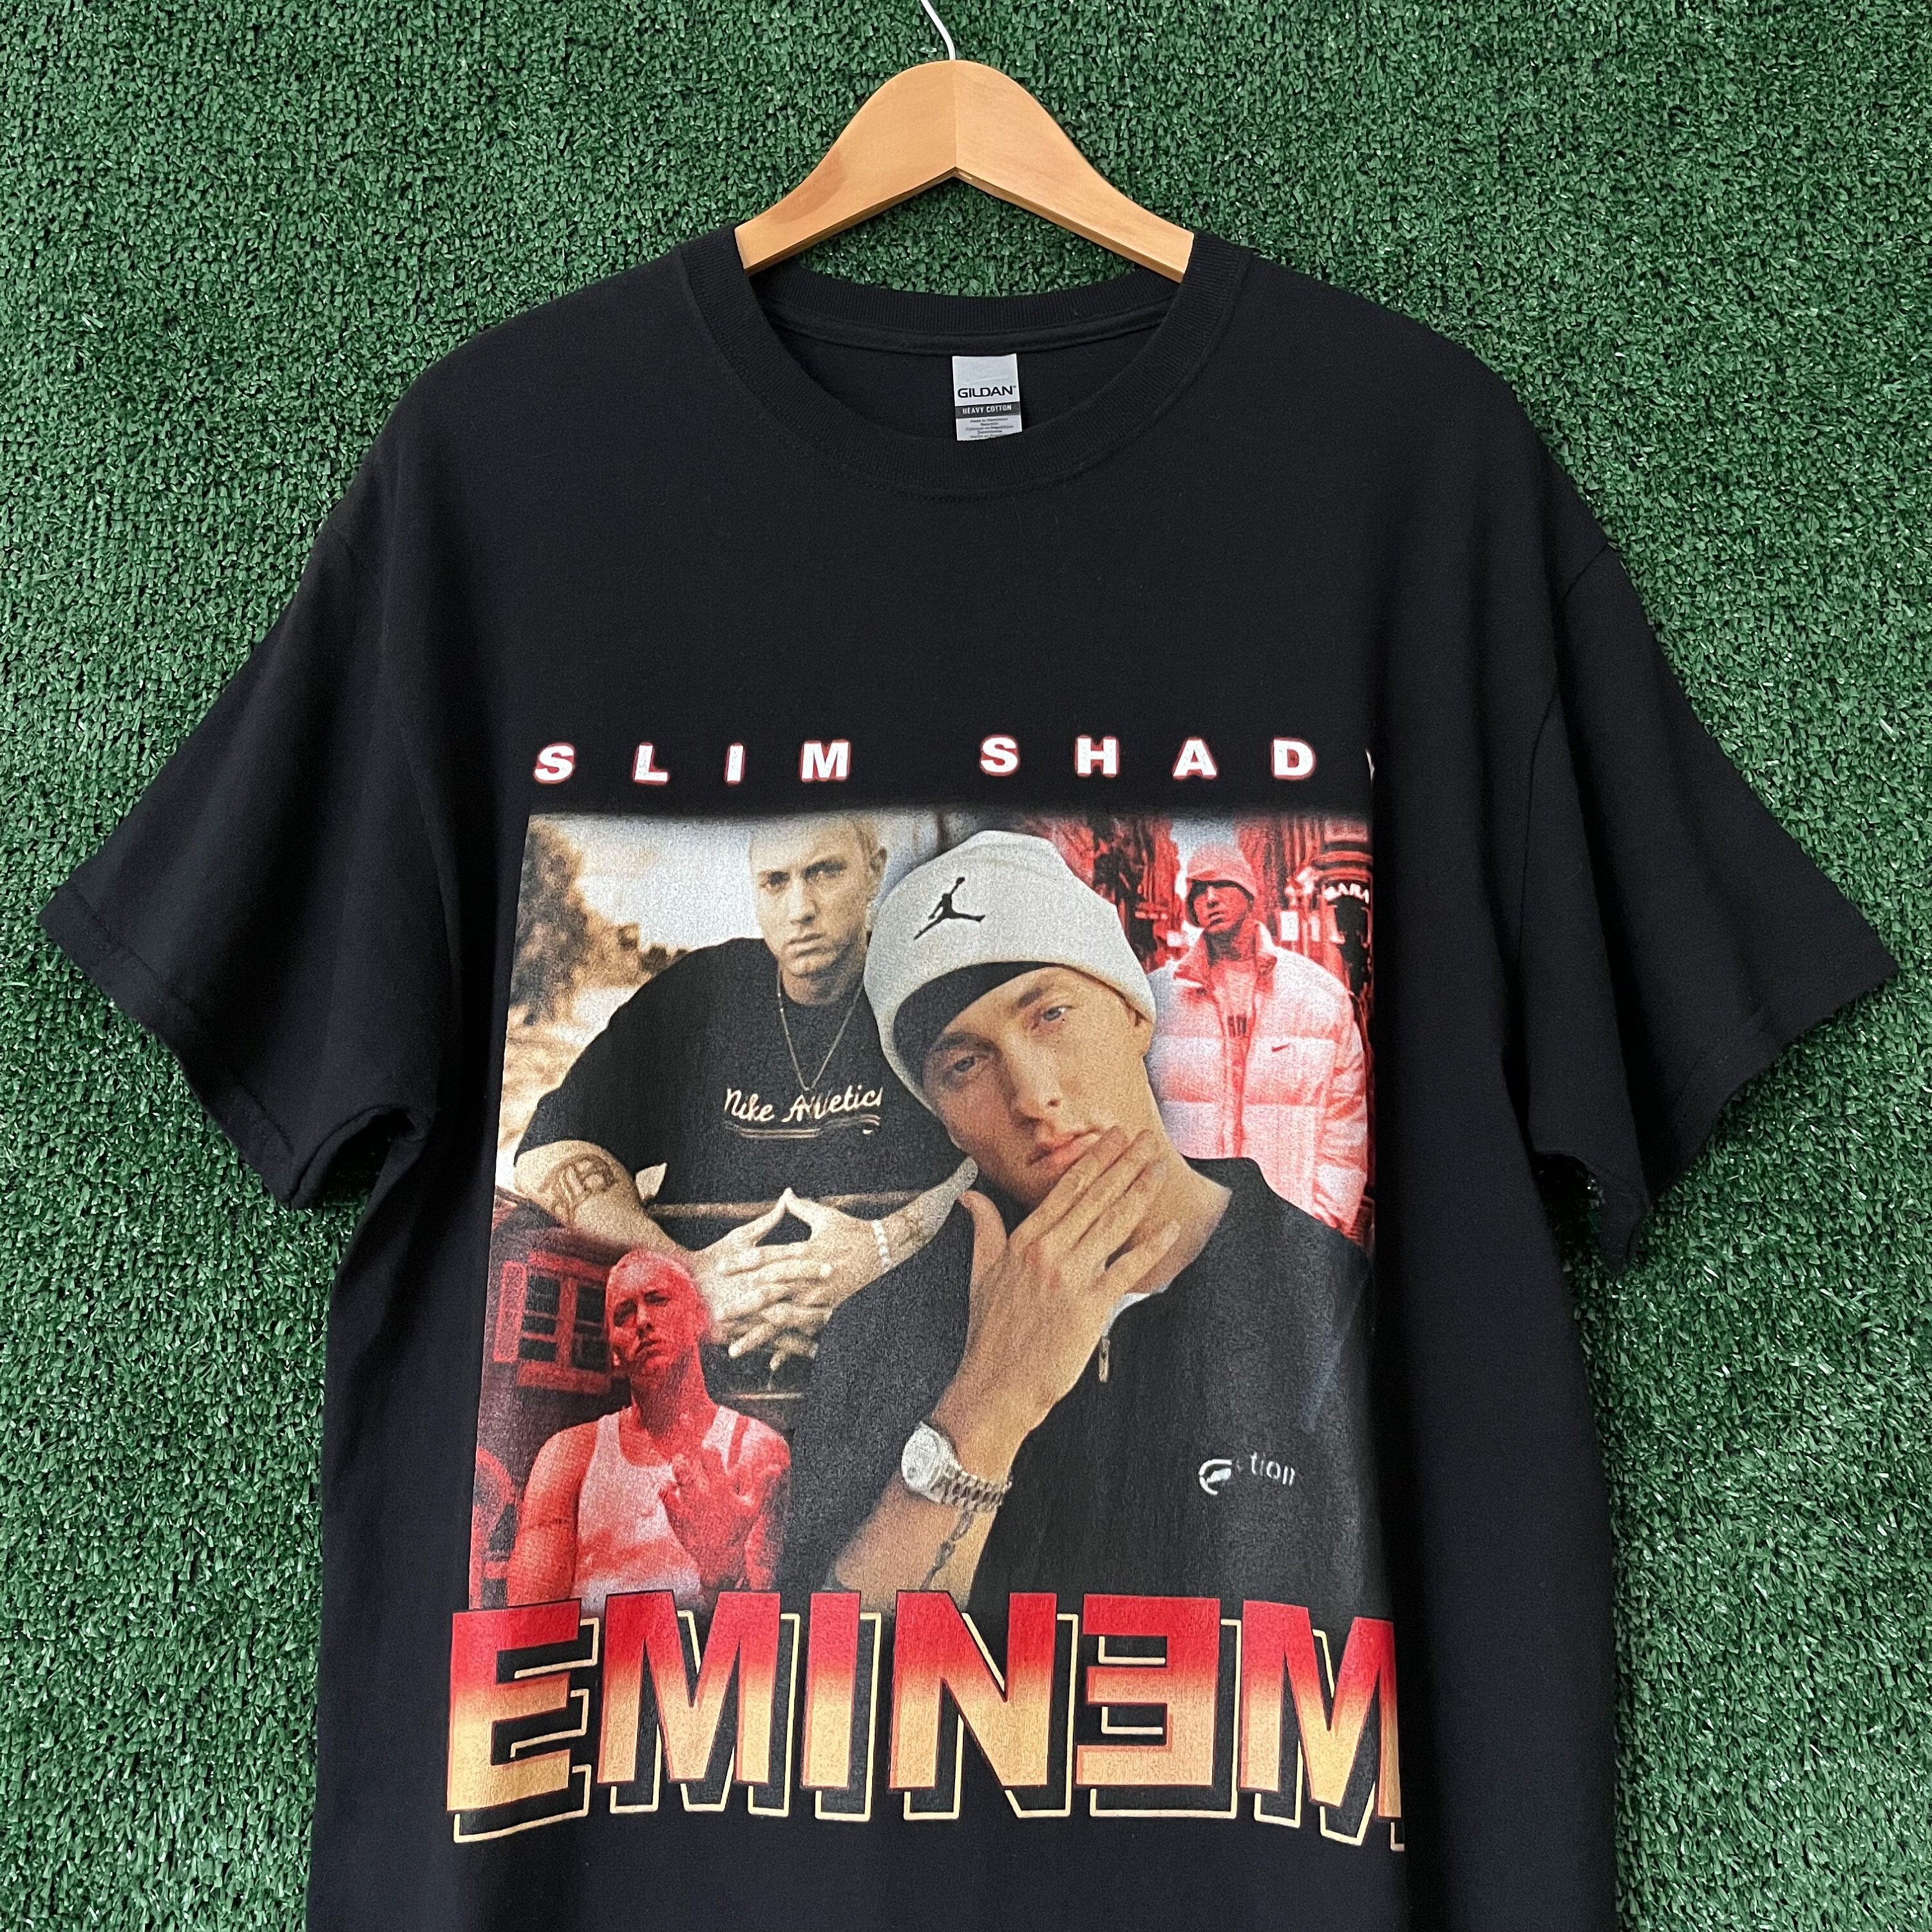 se Habitat automatisk Eminem Shirt - Etsy